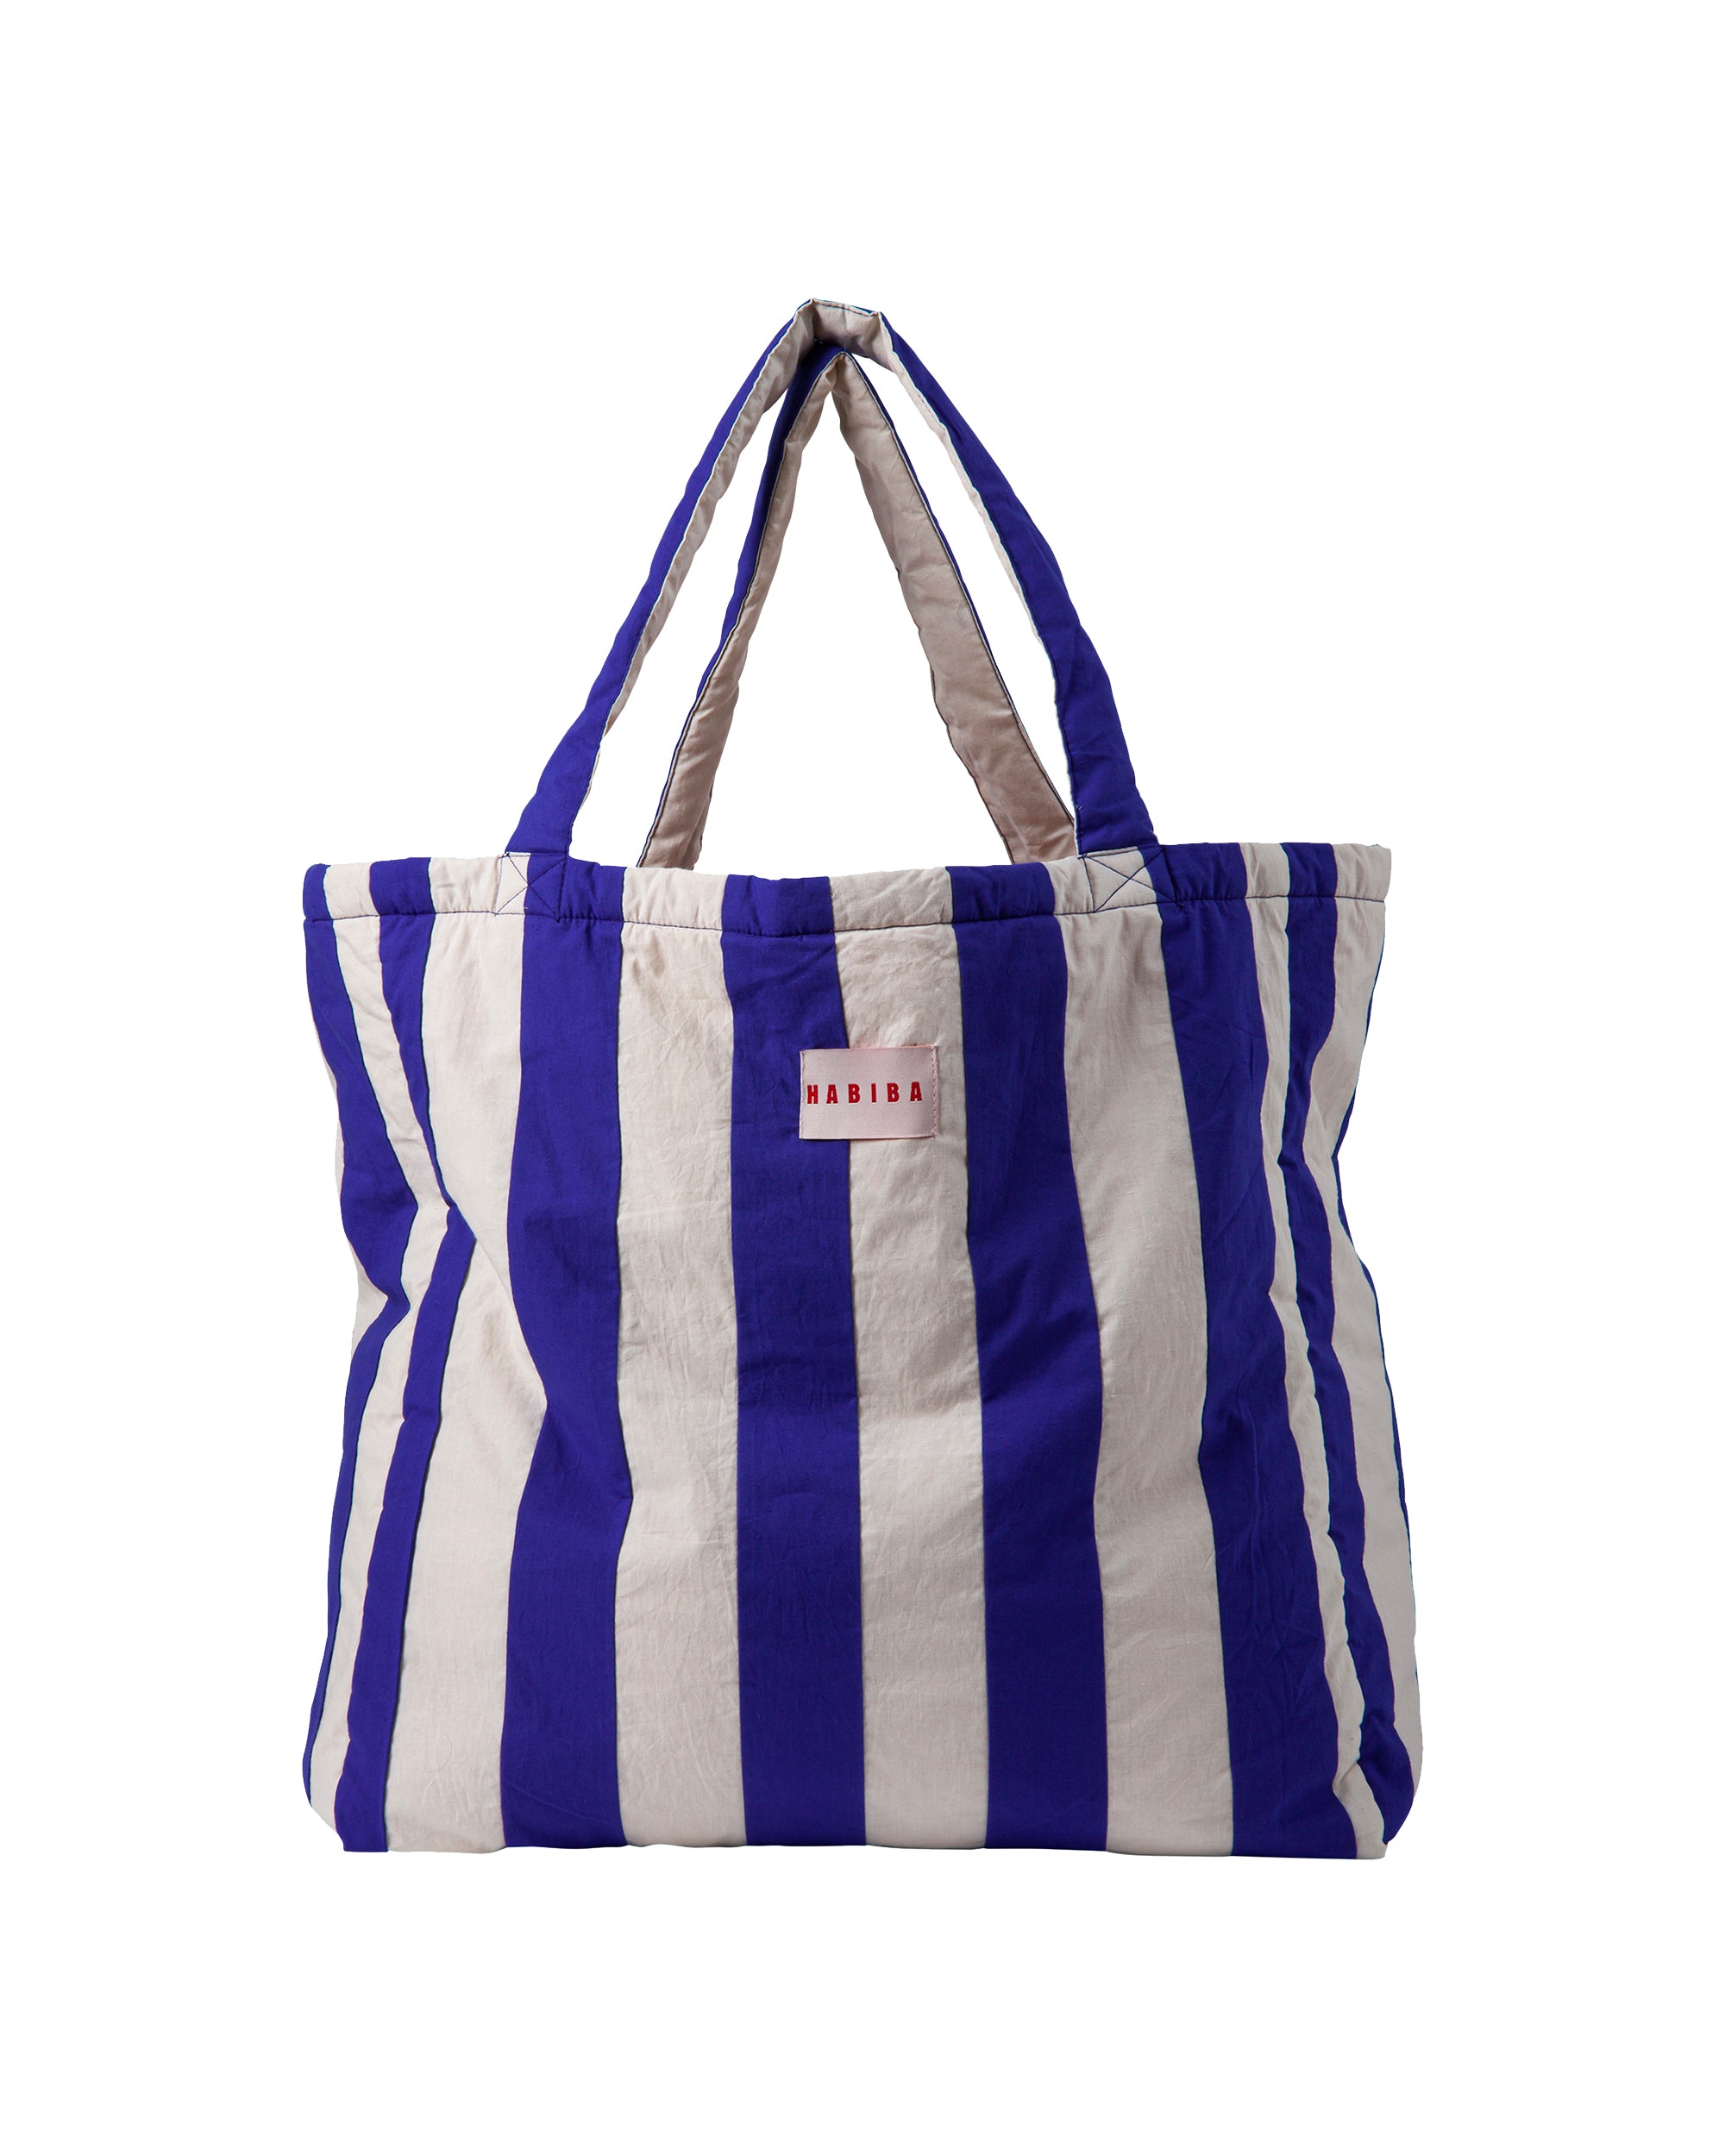 HABIBA MUMU TOTE BAG Tote bag JAPAN BLUE